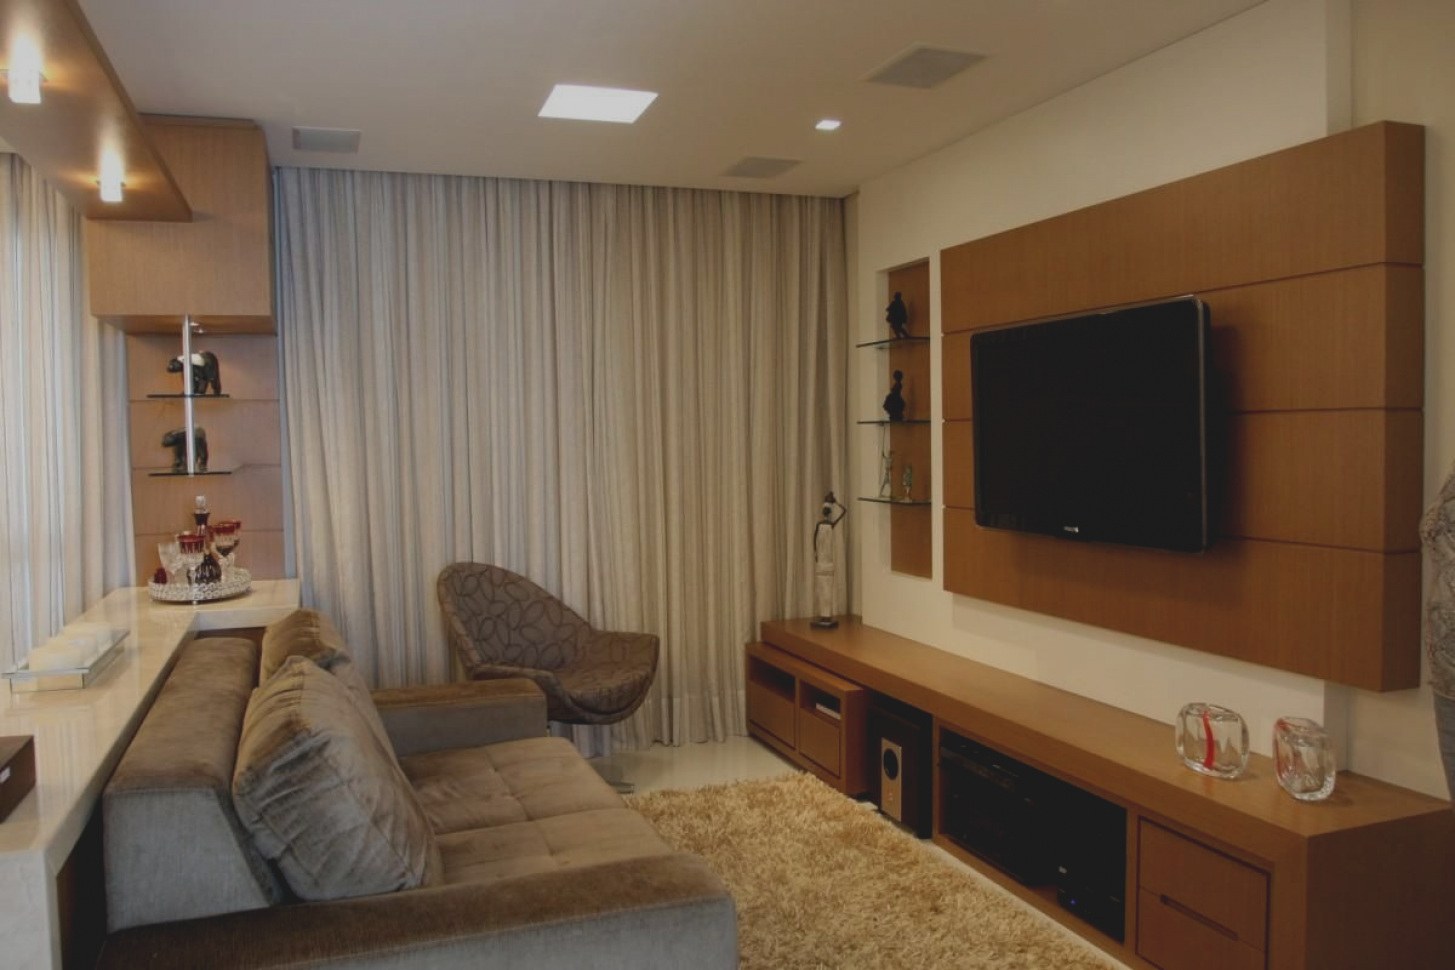 Телевизор в маленькой комнате. Зал с телевизором и диваном. Планировка комнаты с телевизором. Маленькая комната с диваном и телевизором. Диван и телевизор в небольшой комнате.